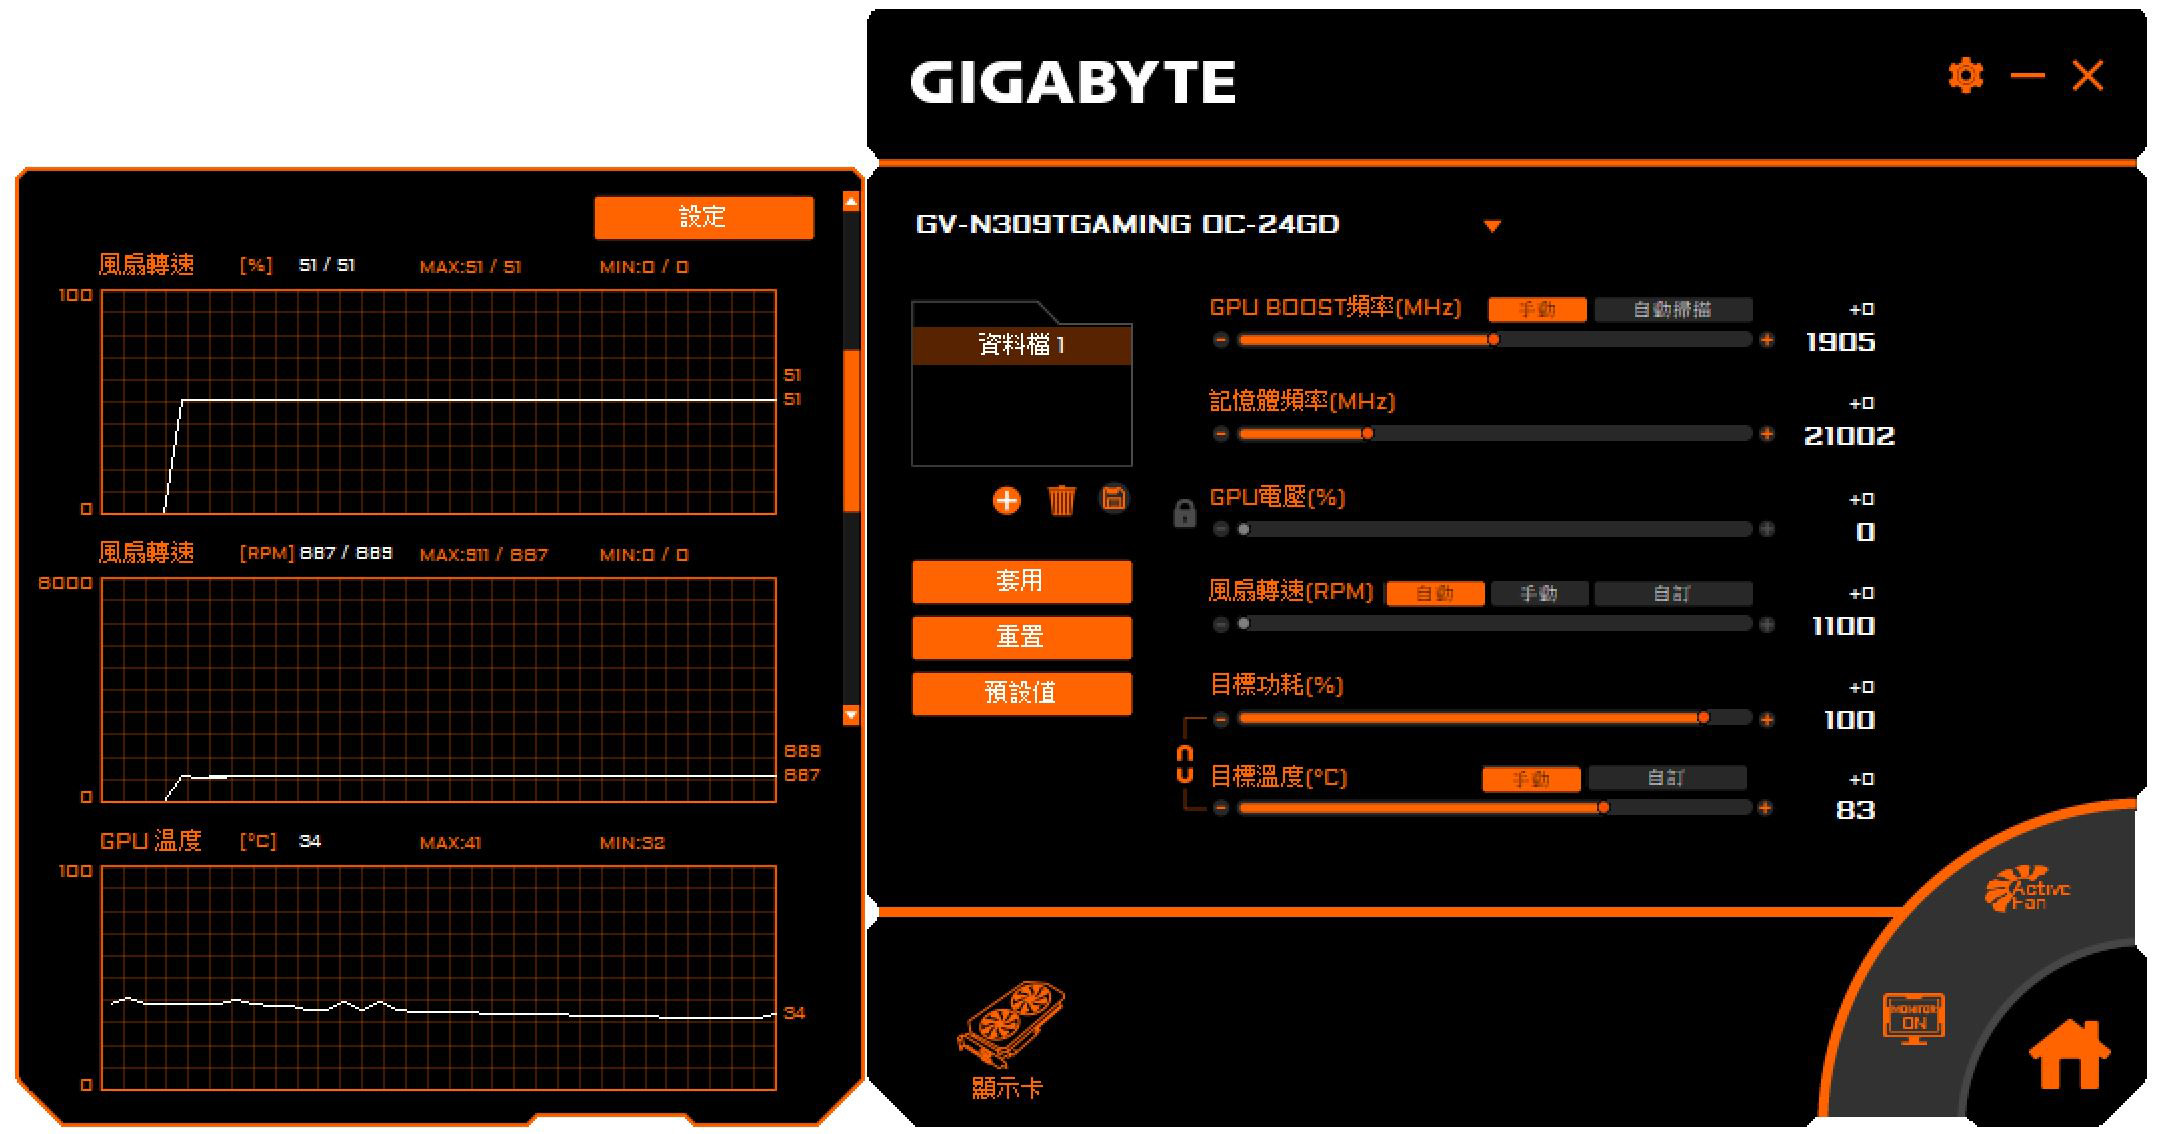 GIGABYTE GeForce RTX 3090 Ti GAM